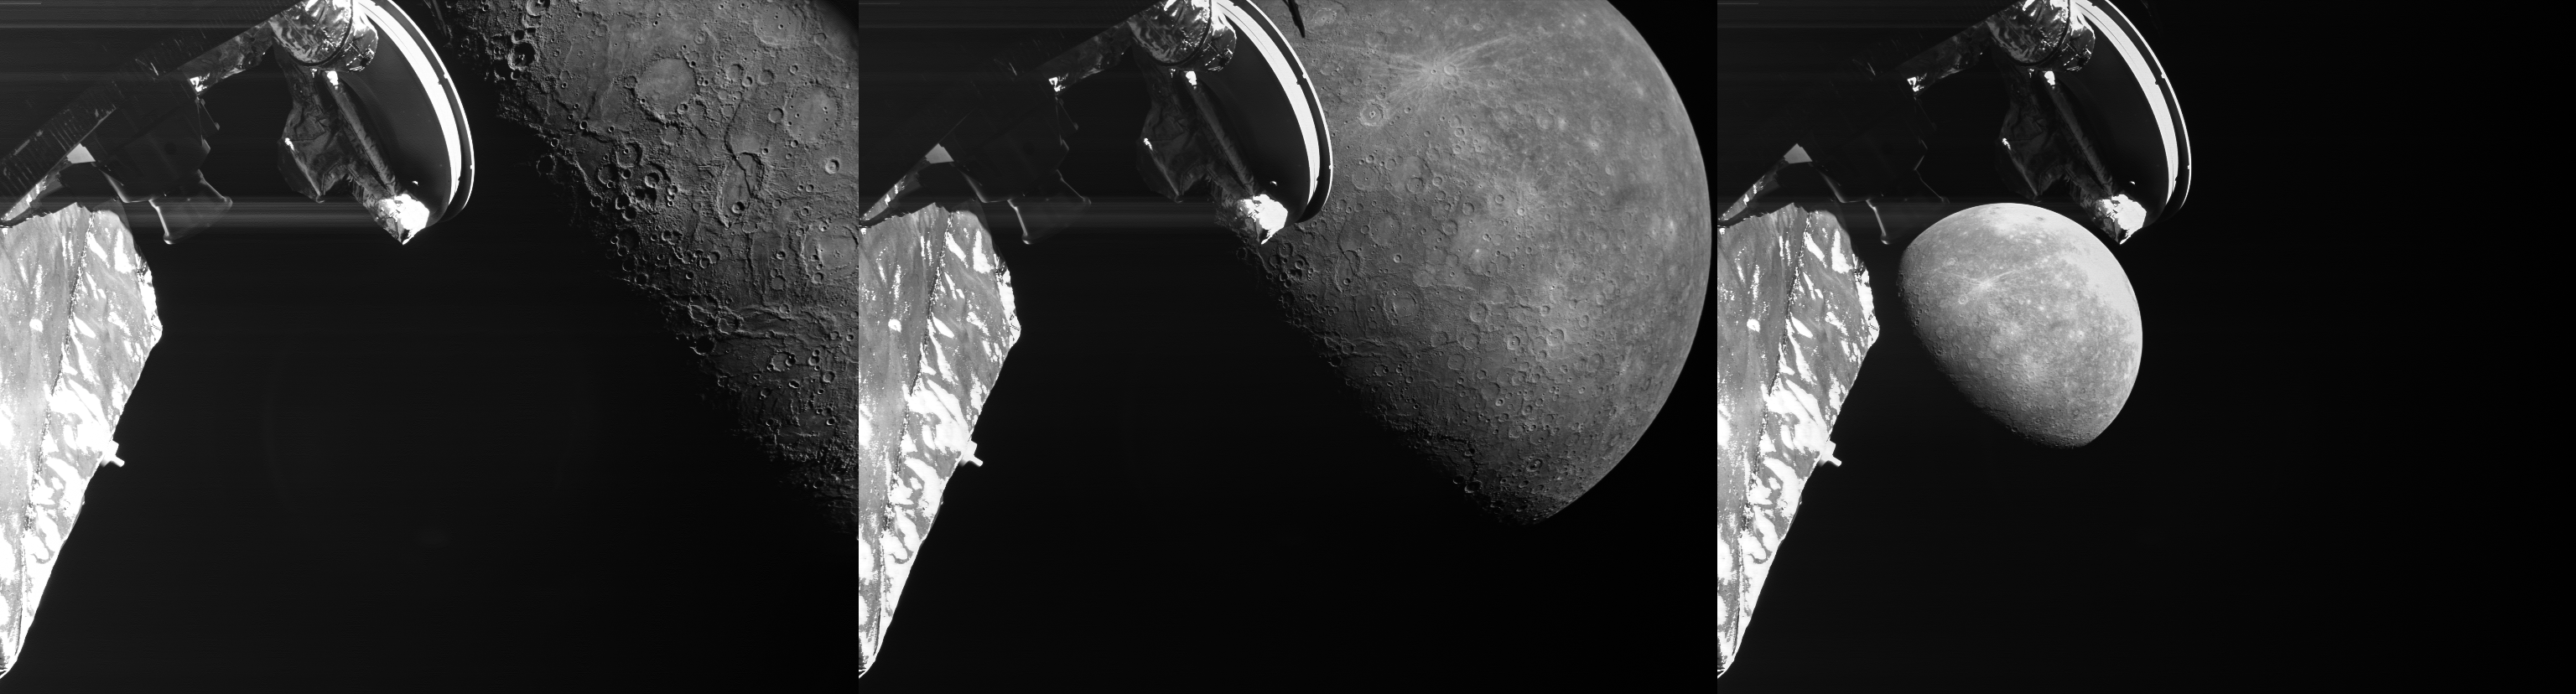 Зонд BepiColombo получил новые снимки поверхности Меркурия